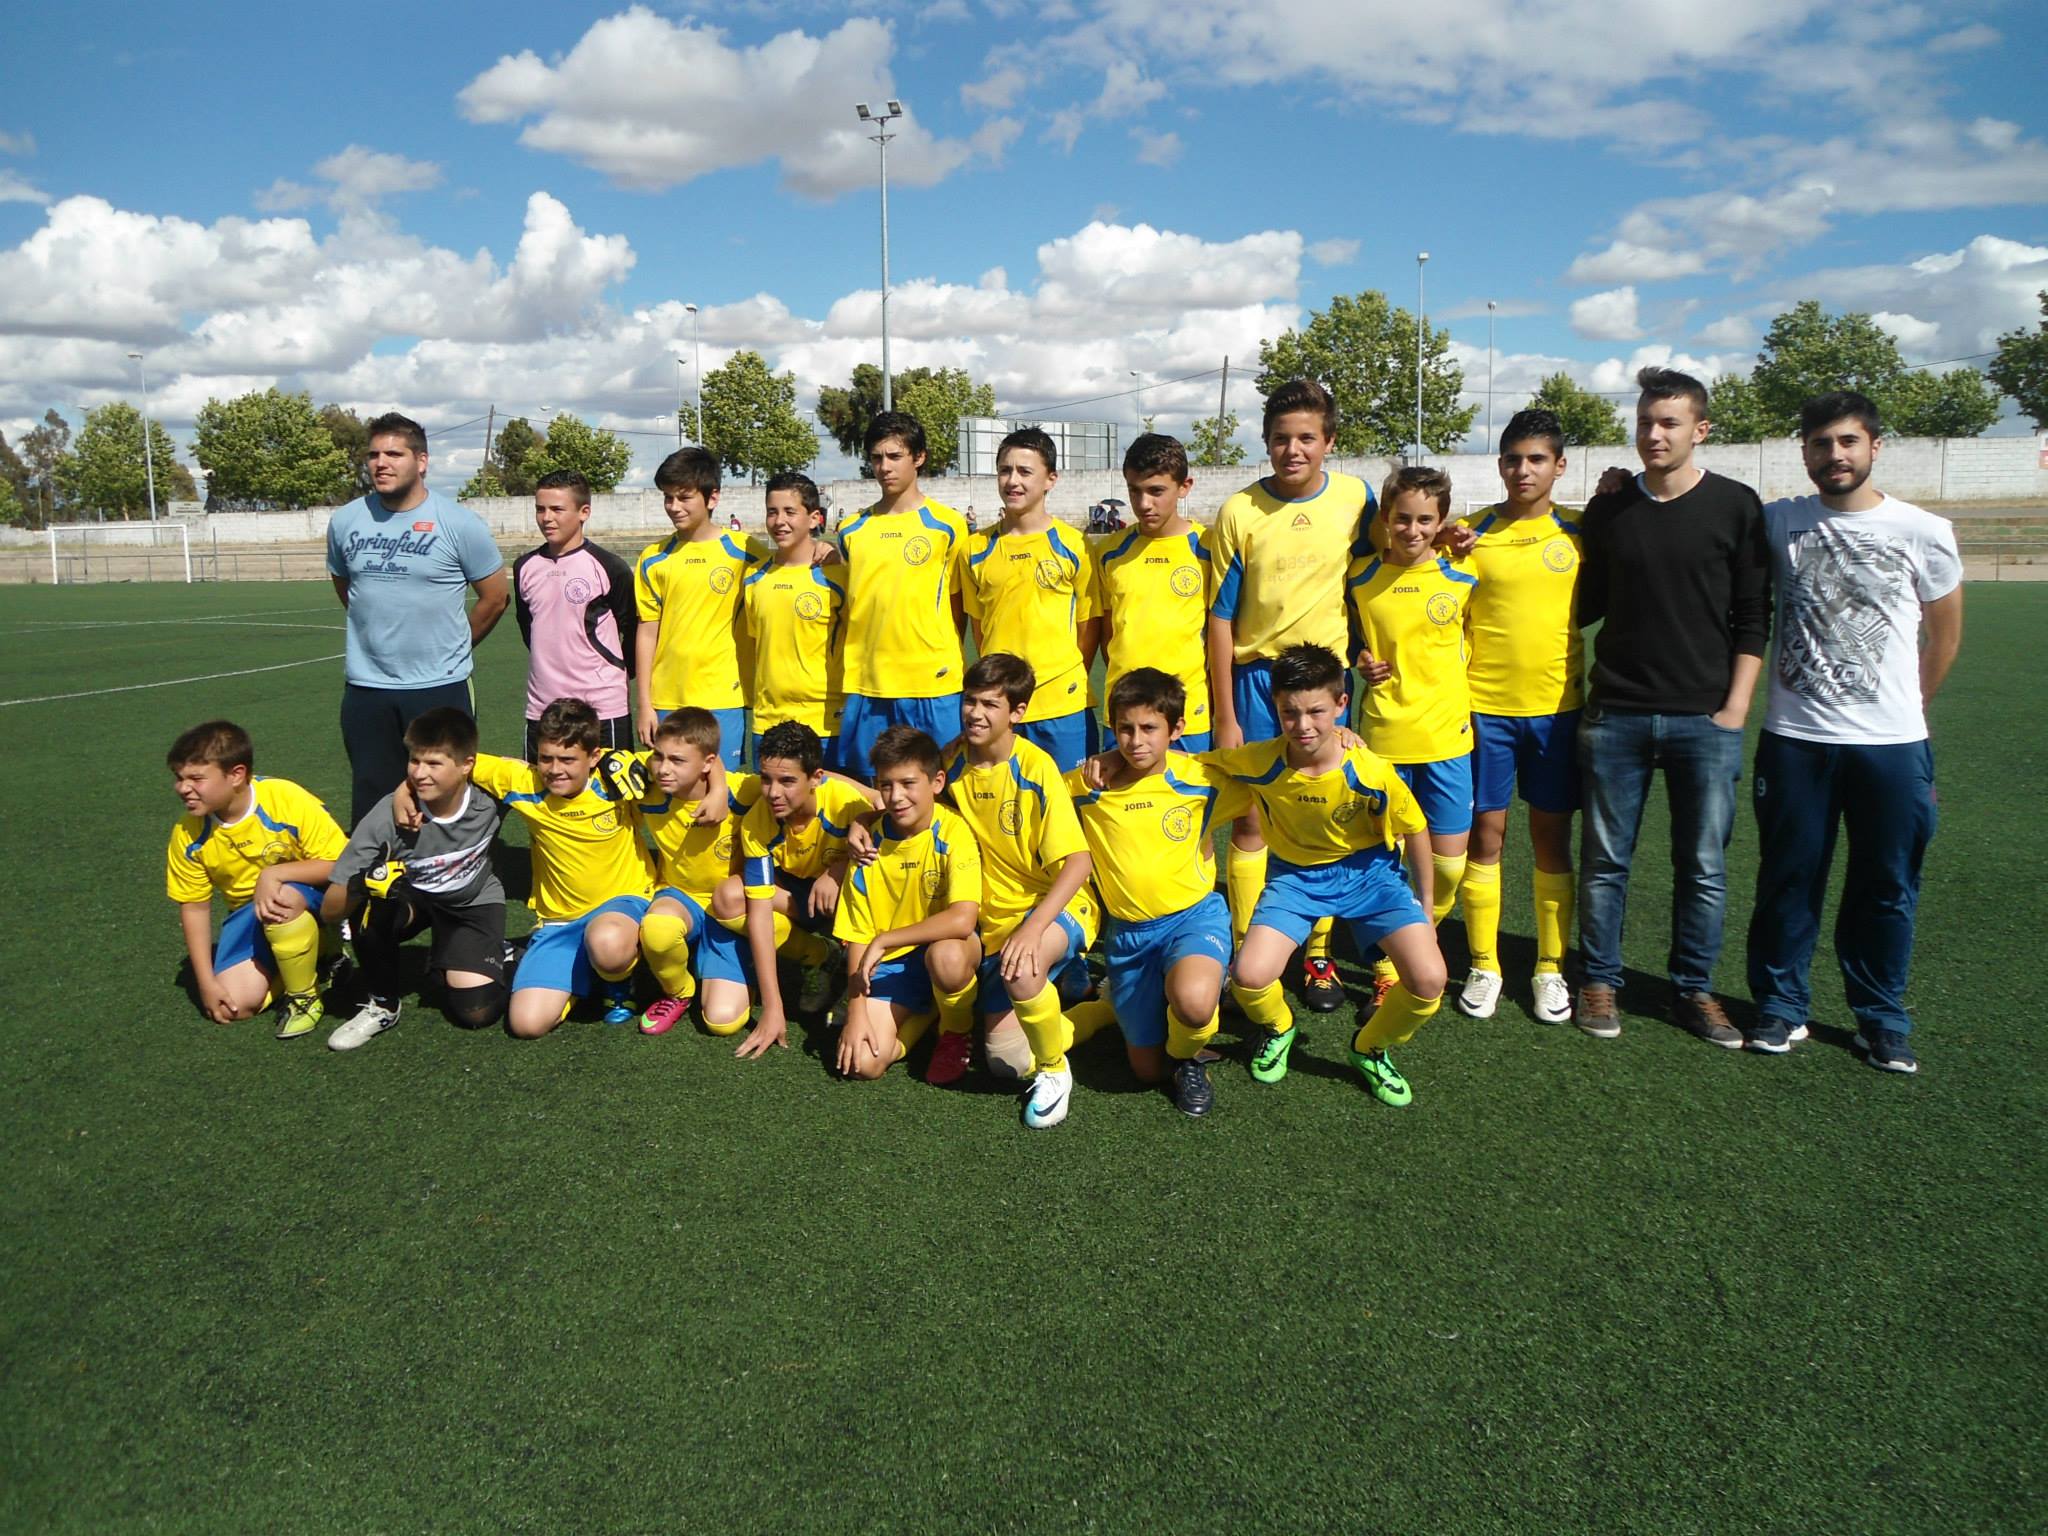 Olivenza FC y C.P. Valdivia, rivales de los equipos infantil y cadete de La Solera en la ronda final de la fase de ascenso a 1ª división